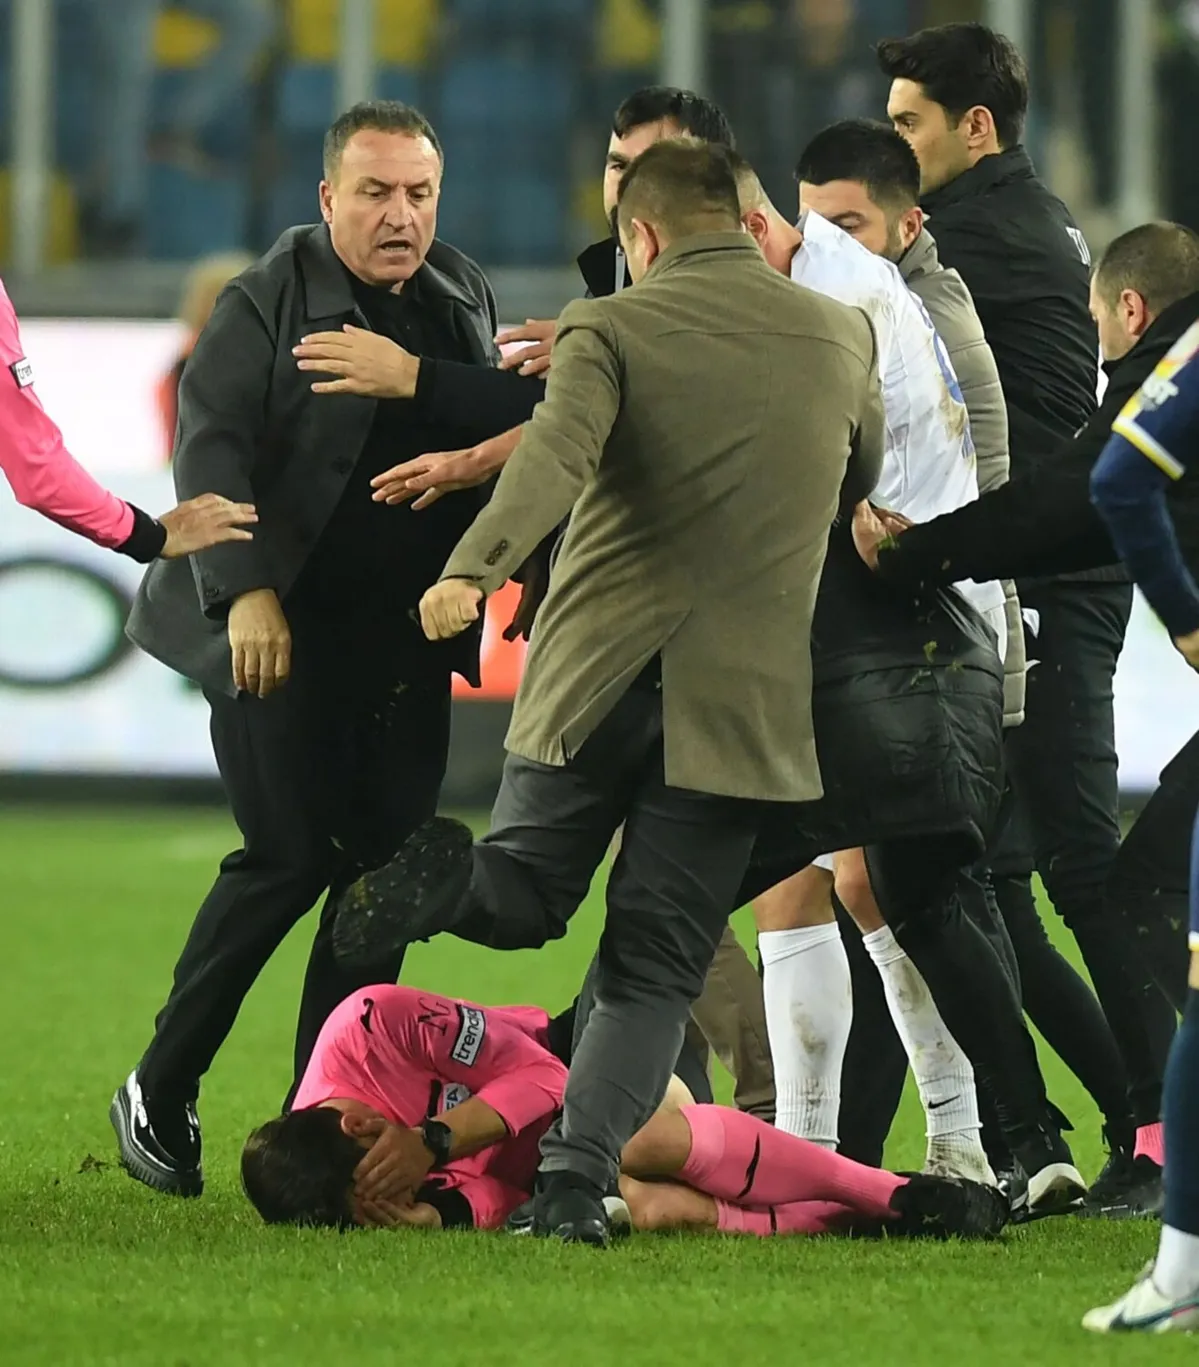 Árbitro é agredido no Campeonato turco